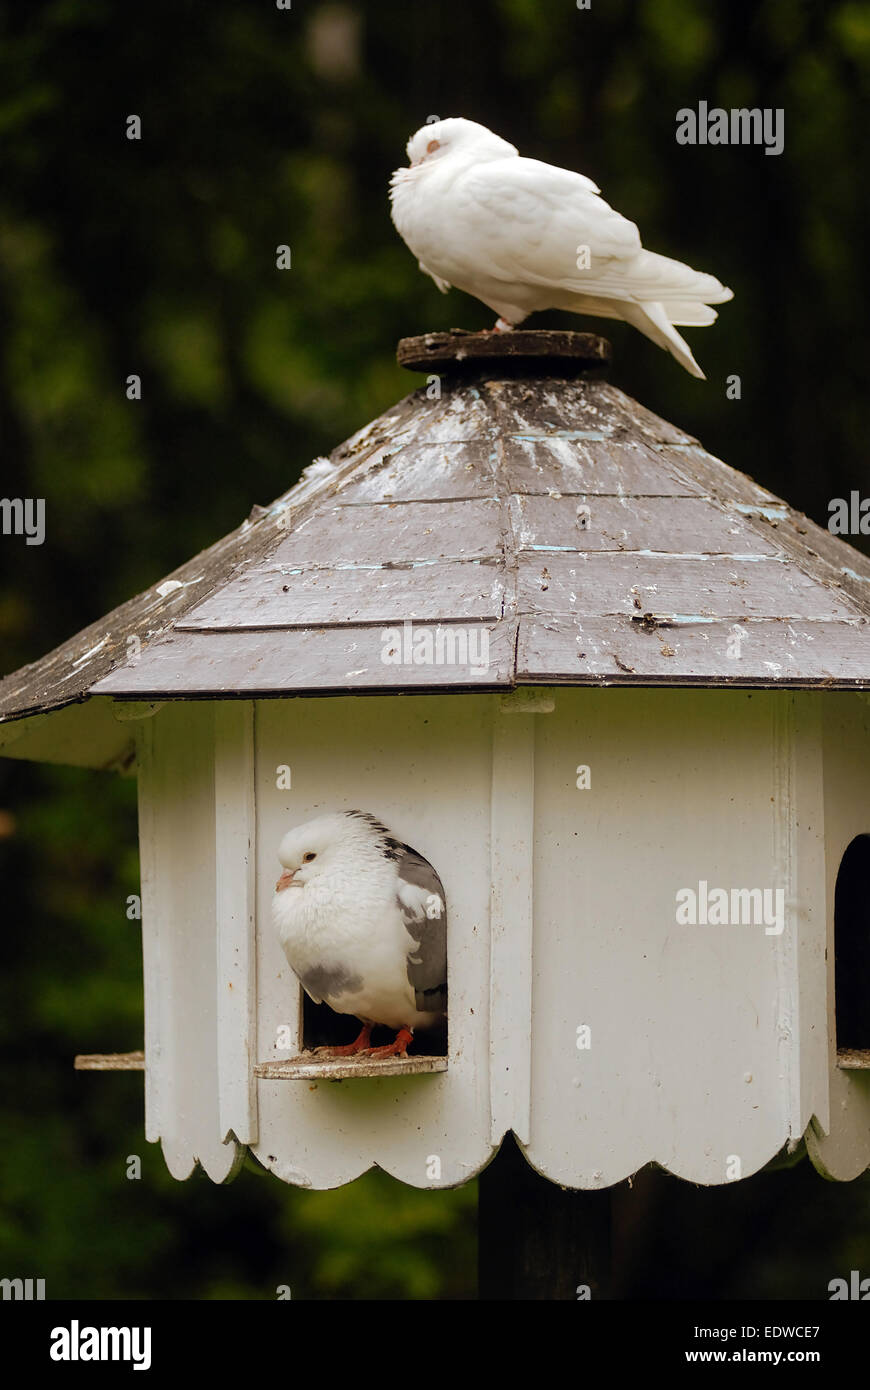 Weiße Tauben am Taubenschlag / Vogelhaus Stockfotografie - Alamy